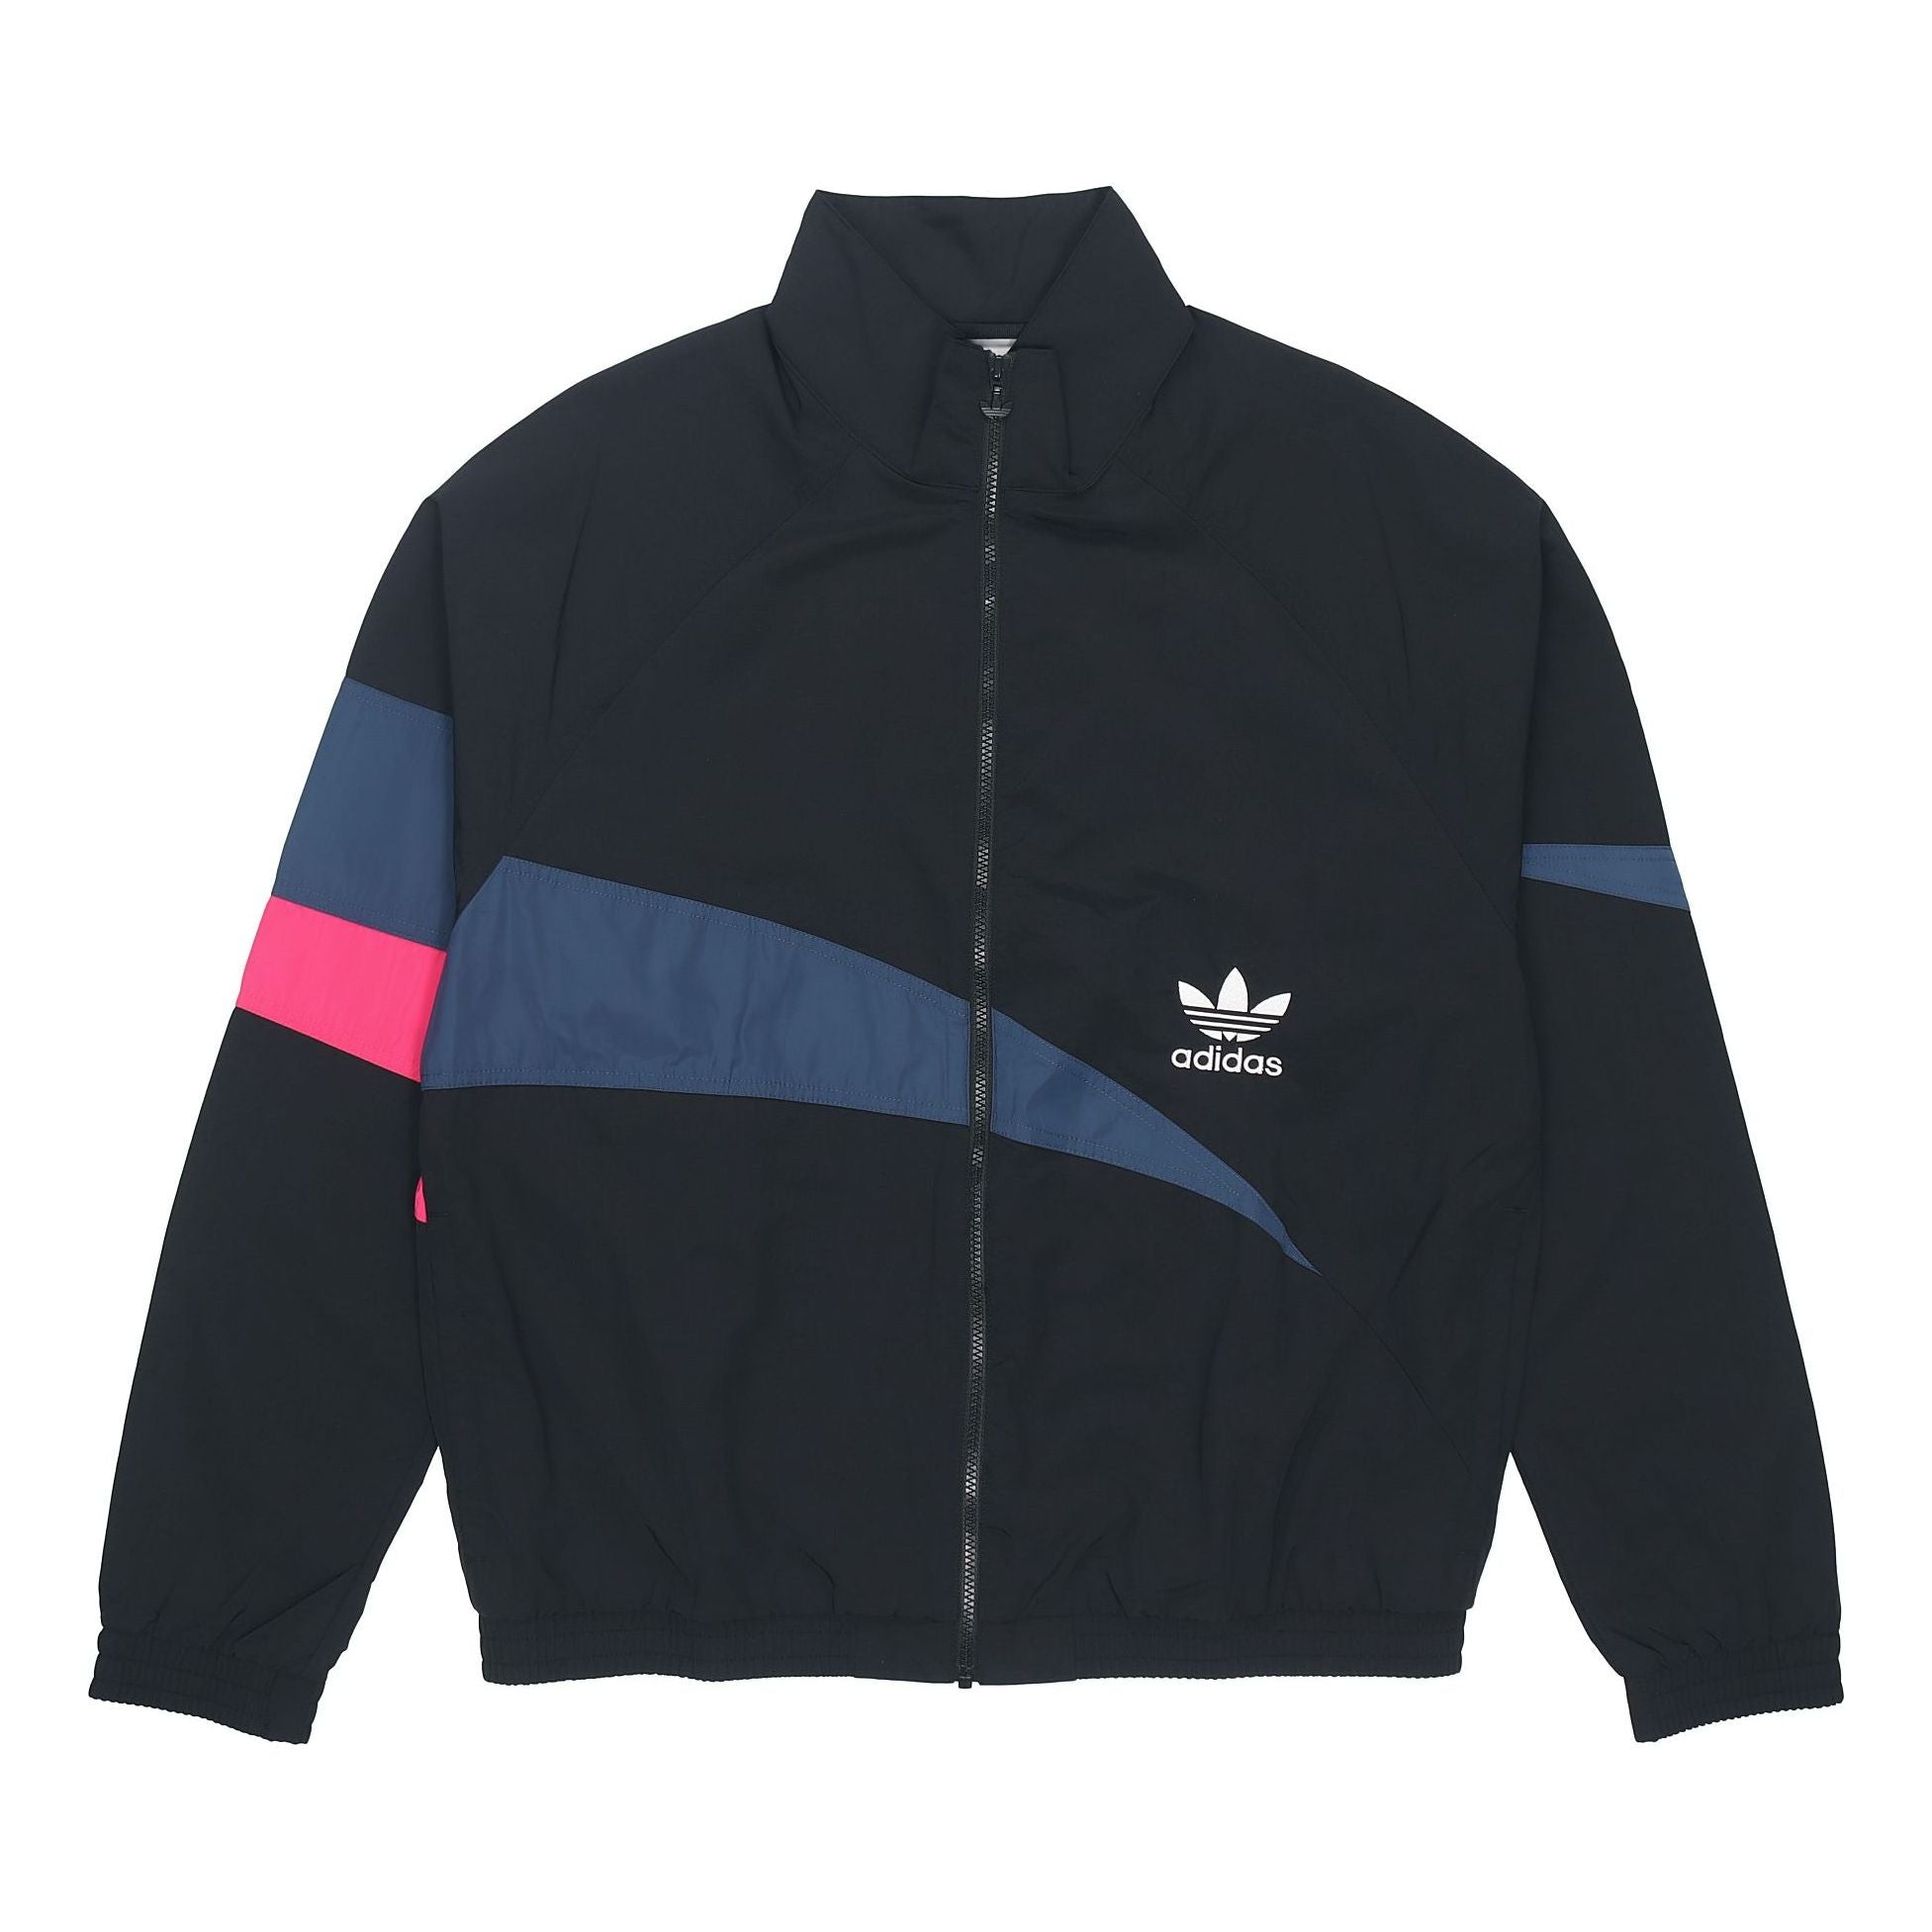 Men's adidas originals TS Track Top Logo Printing Contrasting Colors Sports  Jacket Autumn Black H46698